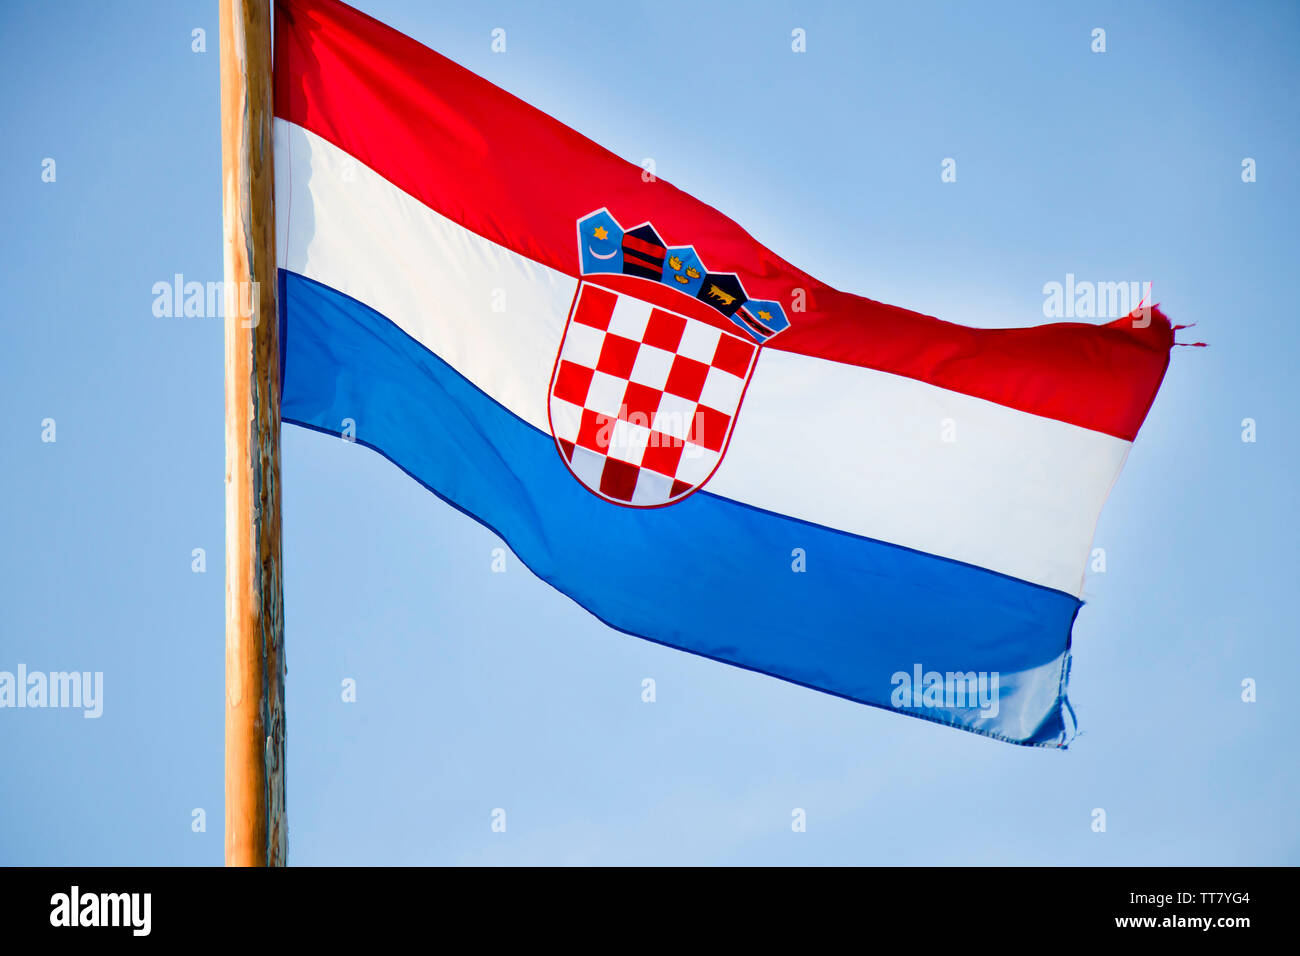 Drapeau national croate voltigeant sur poteau en bois contre le ciel bleu clair Banque D'Images